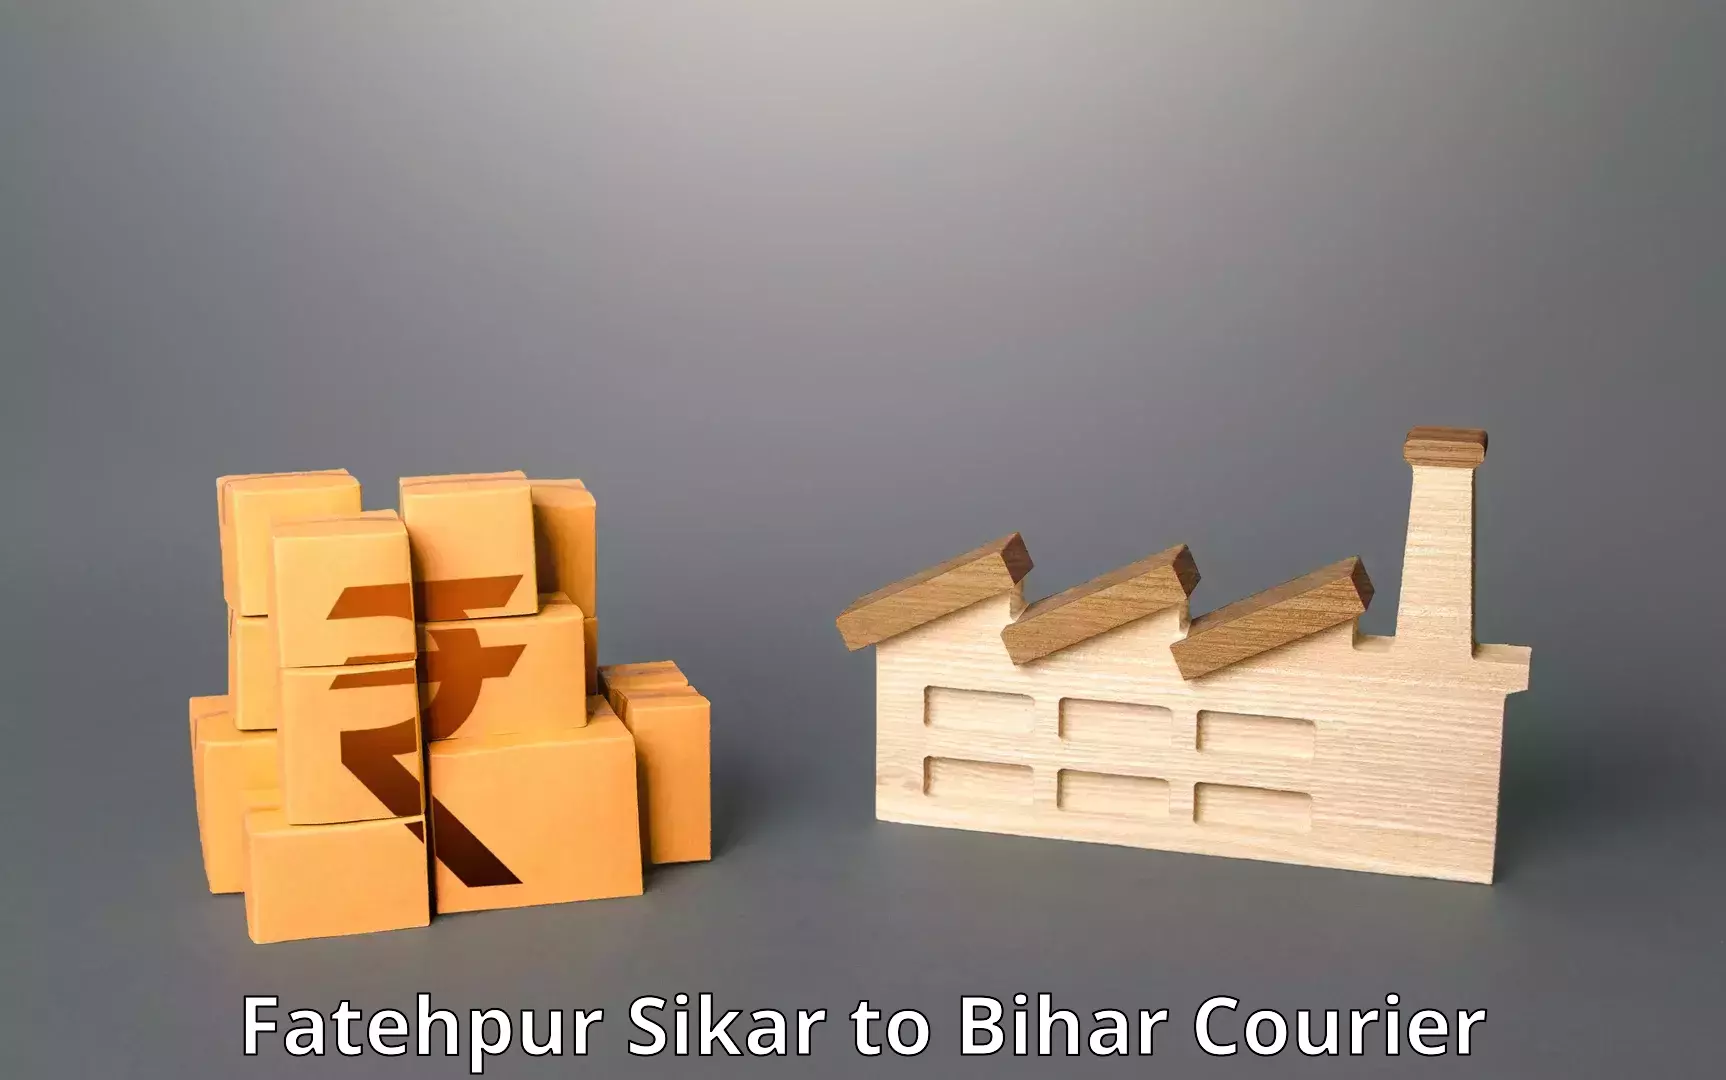 Efficient parcel service Fatehpur Sikar to Sandesh